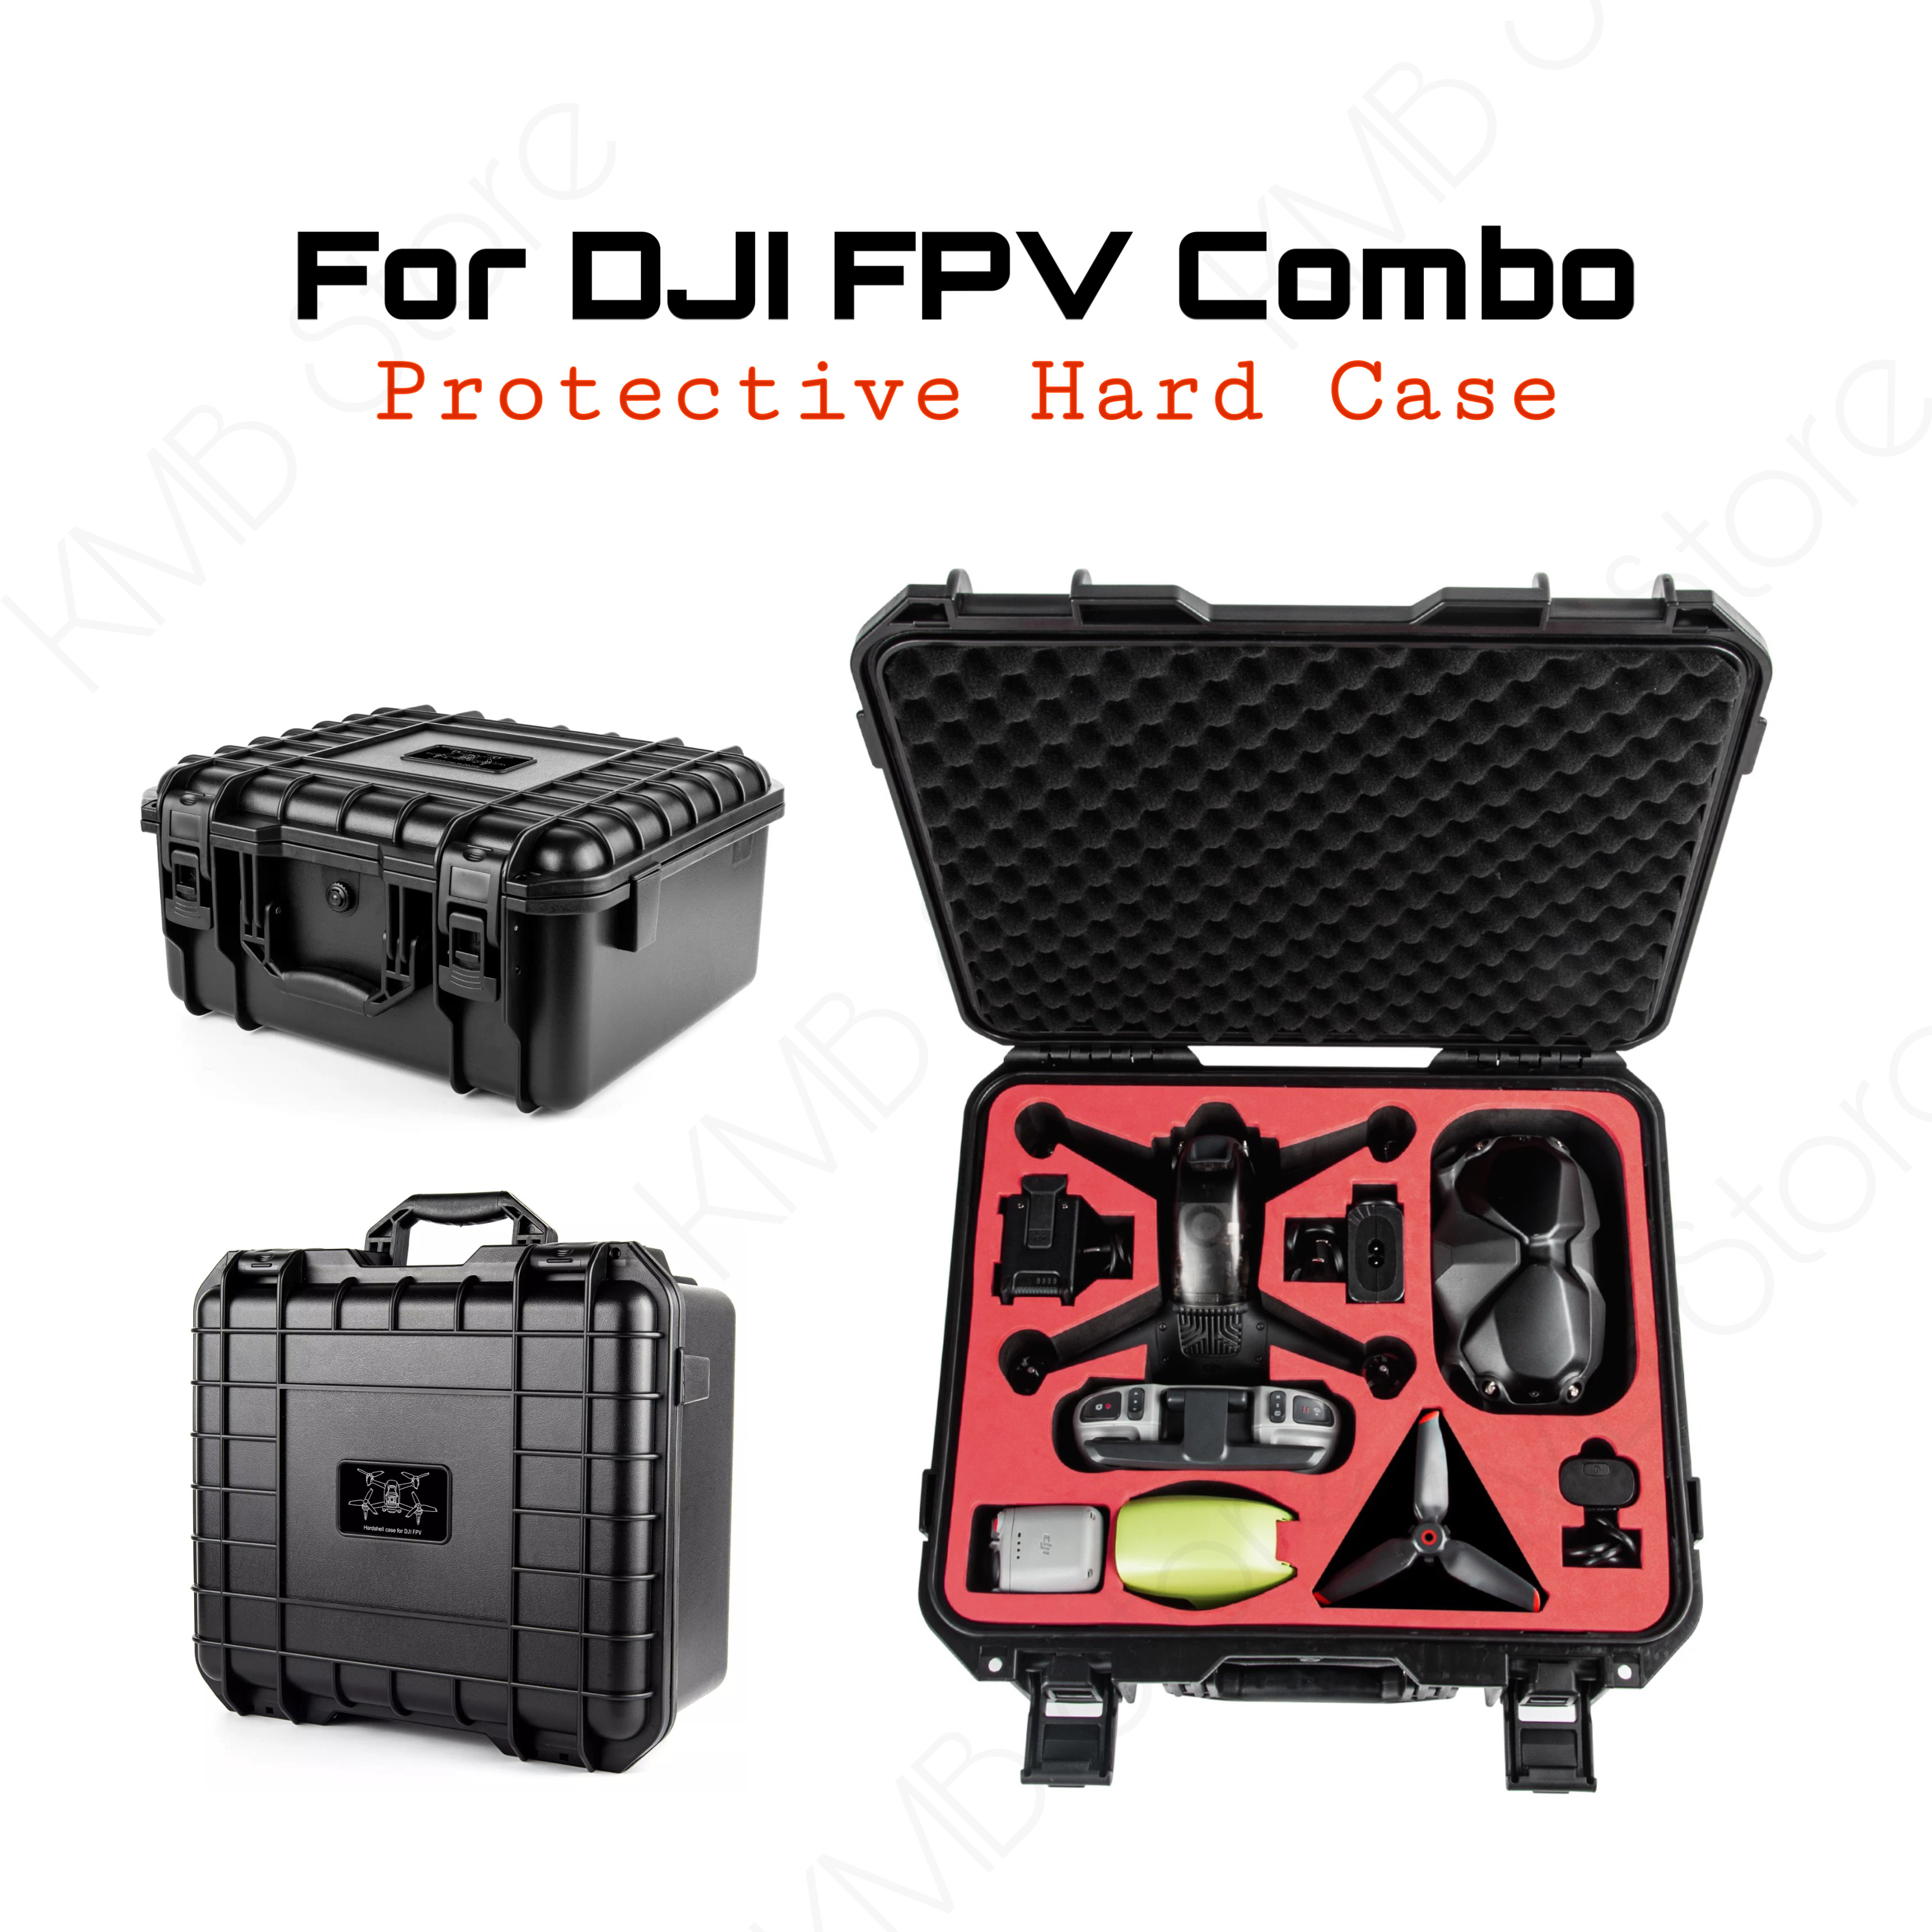 กระเป๋าเคสกันกระแทก DJI FPV Handle Storage Protective Case Hard Plastic Carrying Case ABS Waterproof for Dji FPV Combo